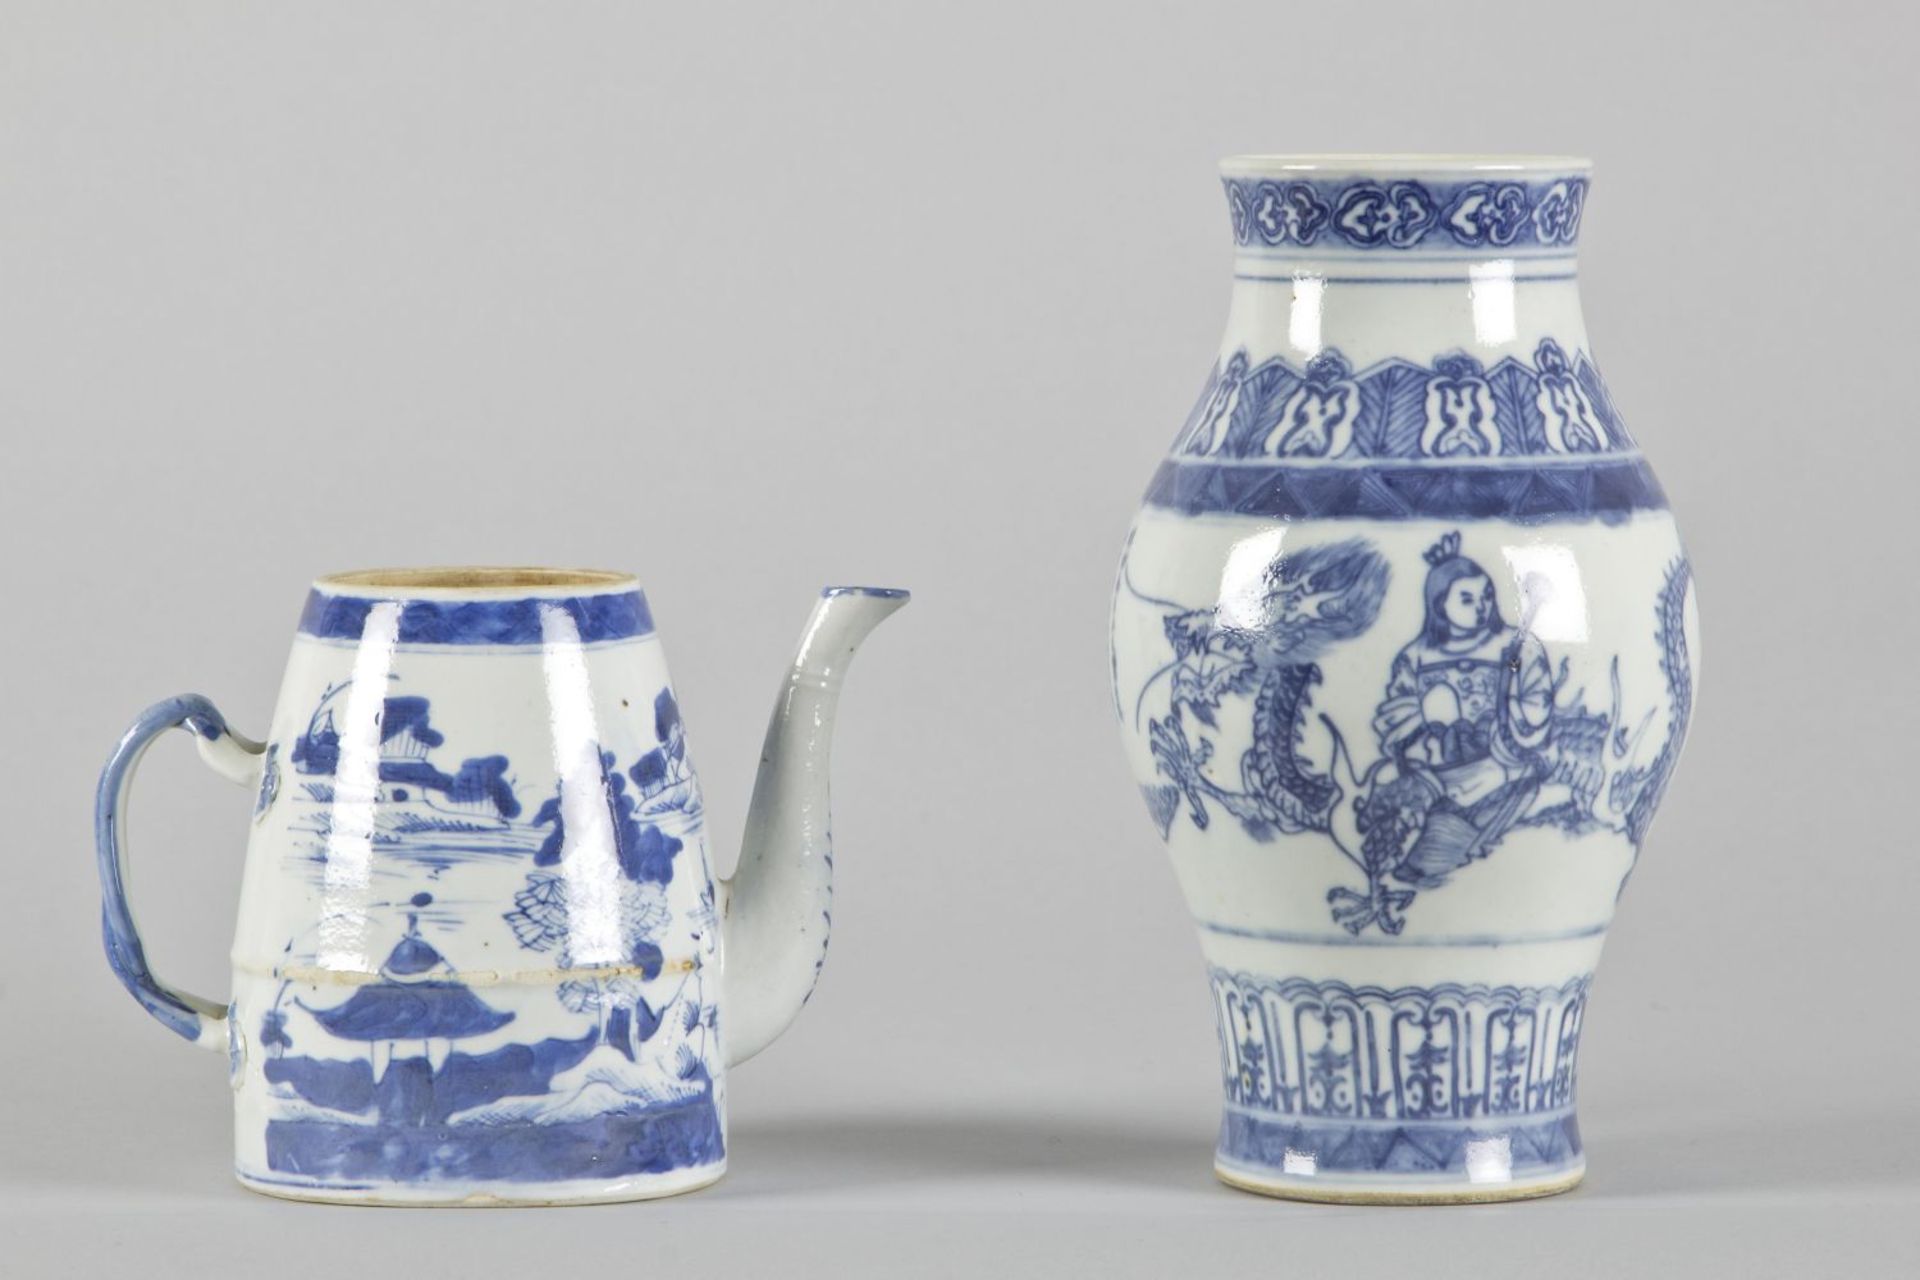 Vase und TeekannePorzellan. Versch. blaue Dekore u.a. auf Drachen bzw. Phönix reitende Personen. - Bild 2 aus 3